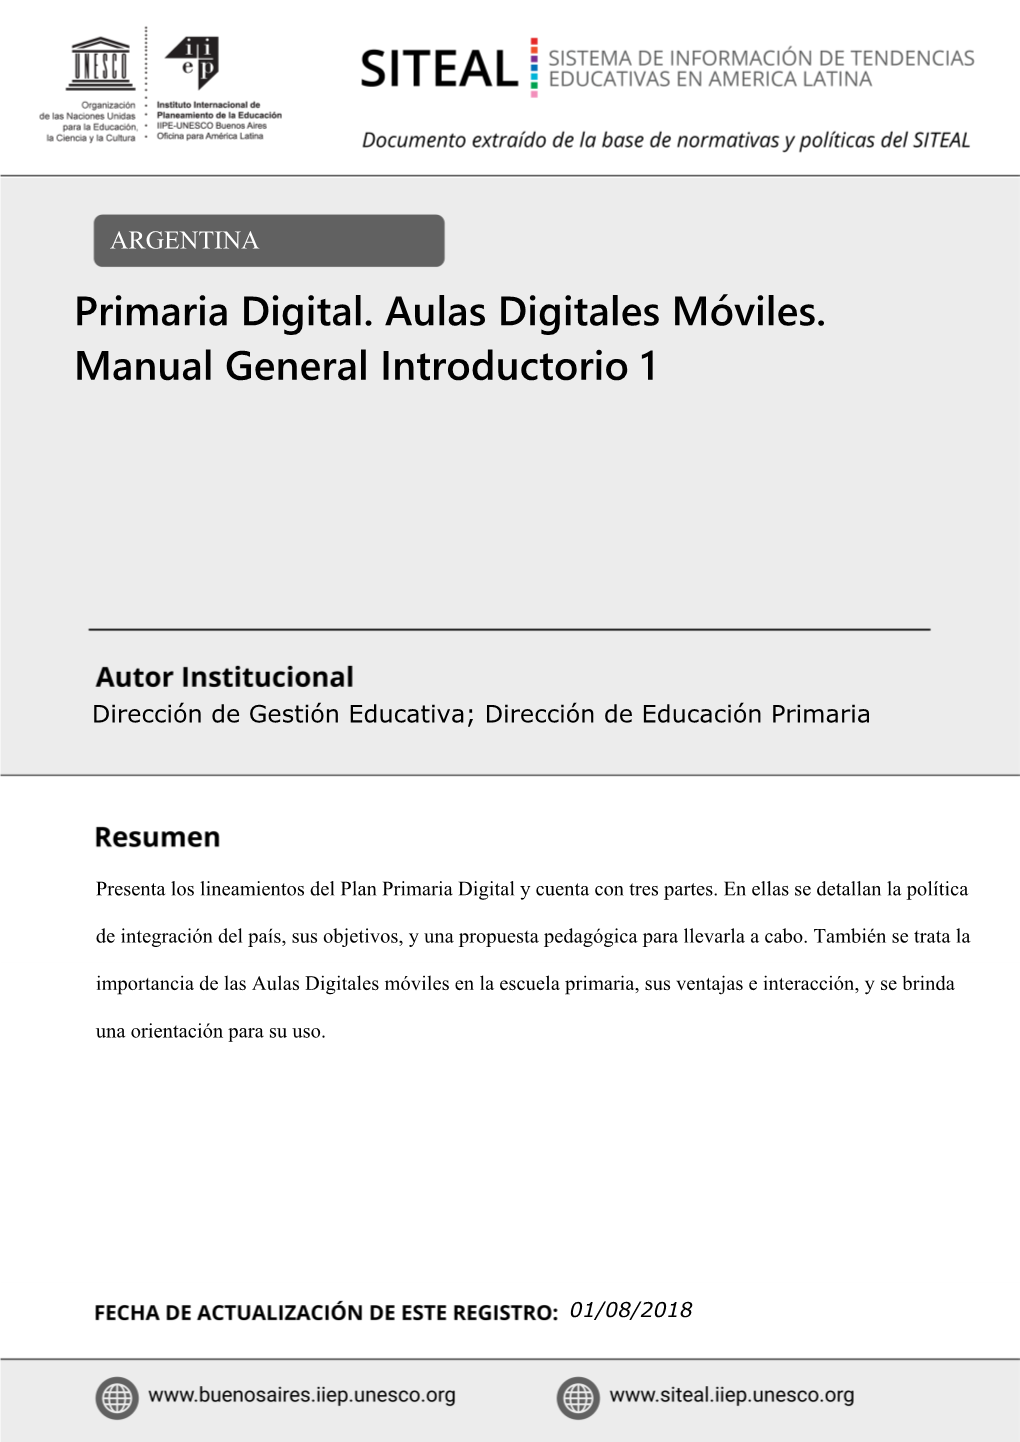 Primaria Digital. Aulas Digitales Móviles. Manual General Introductorio 1